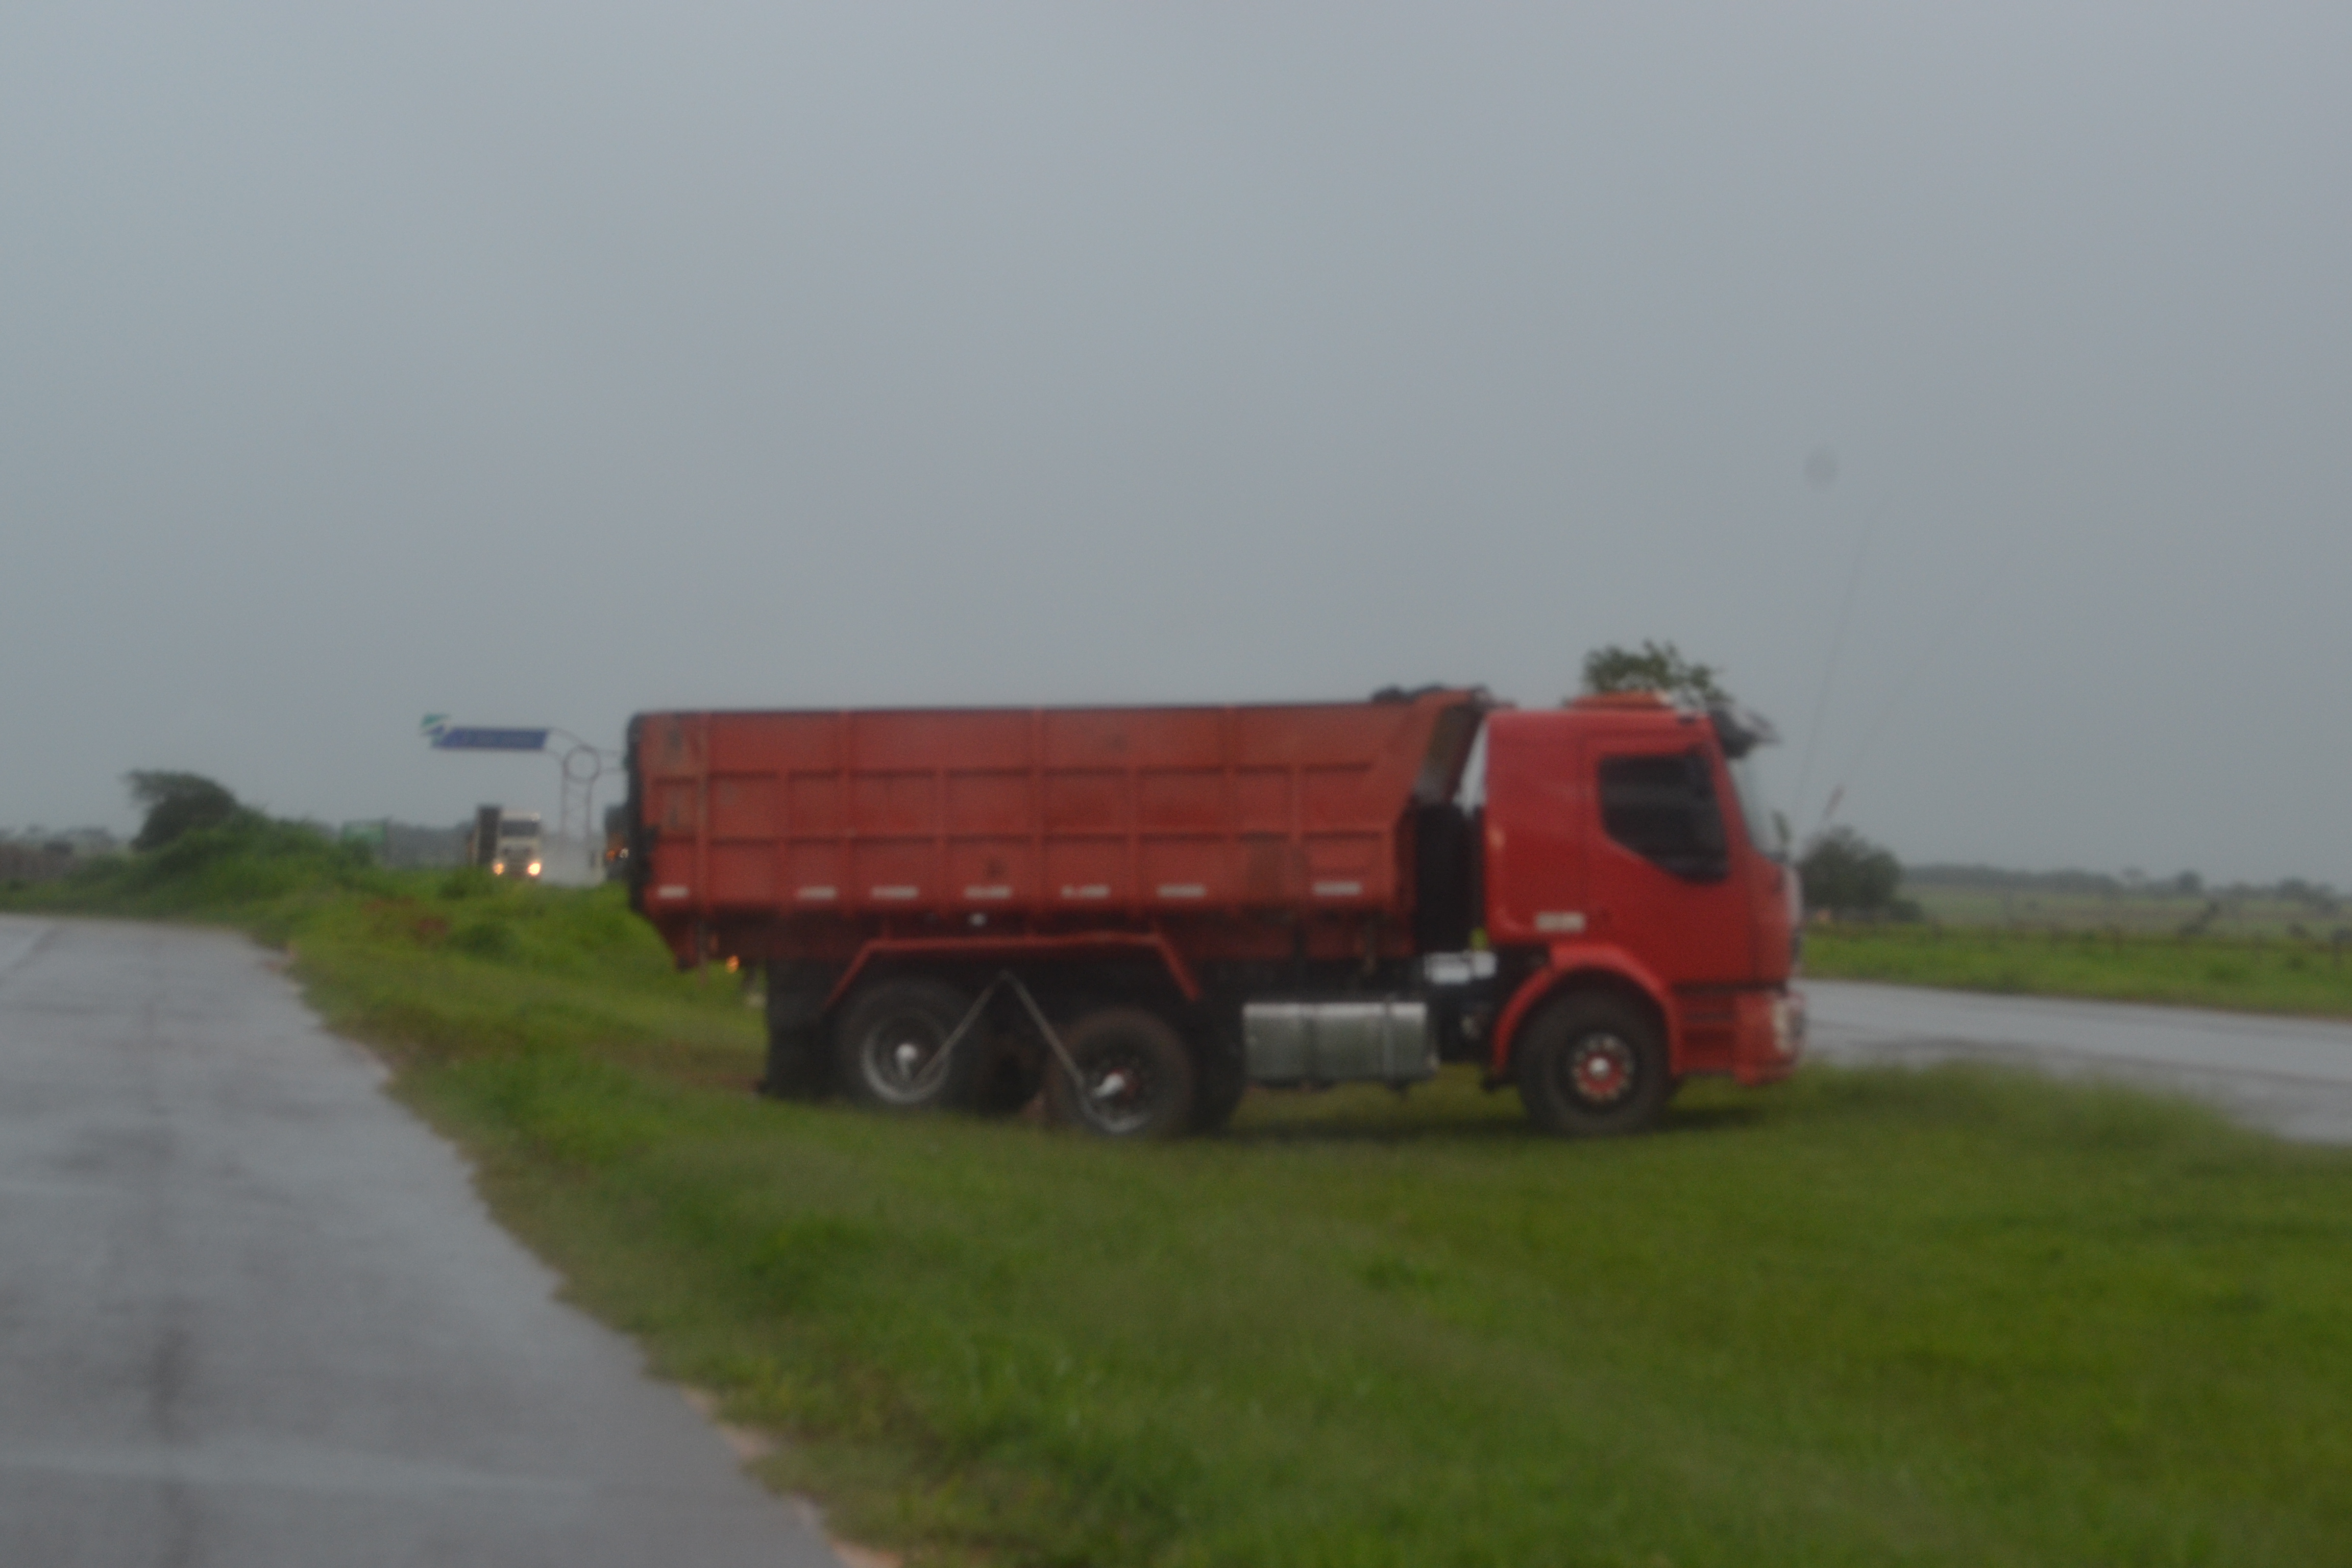 Chovia na hora em que o veículo cruzava o local irregular - Foto: Jornal da Nova